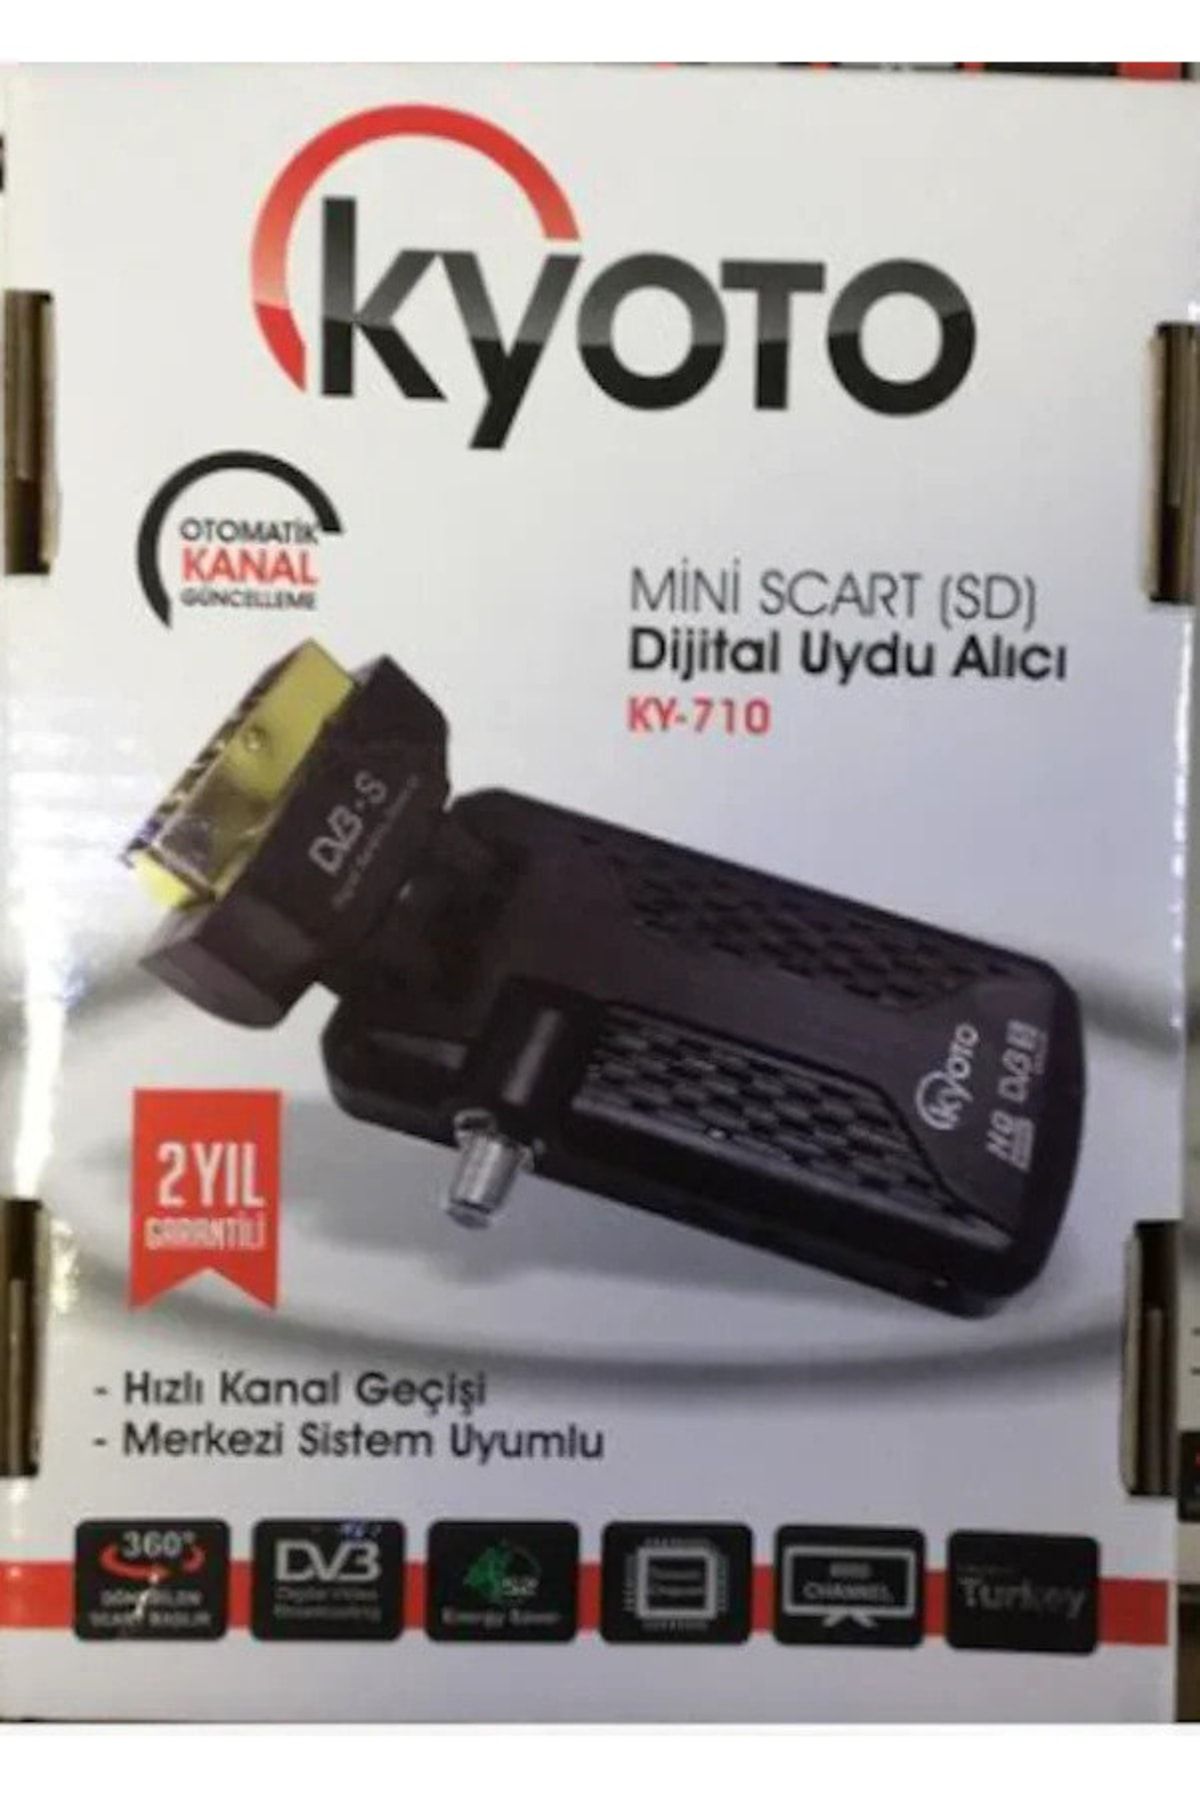 Kyoto Mini Scart (sd) Dijital Uydu Alıcı 710 Siyah